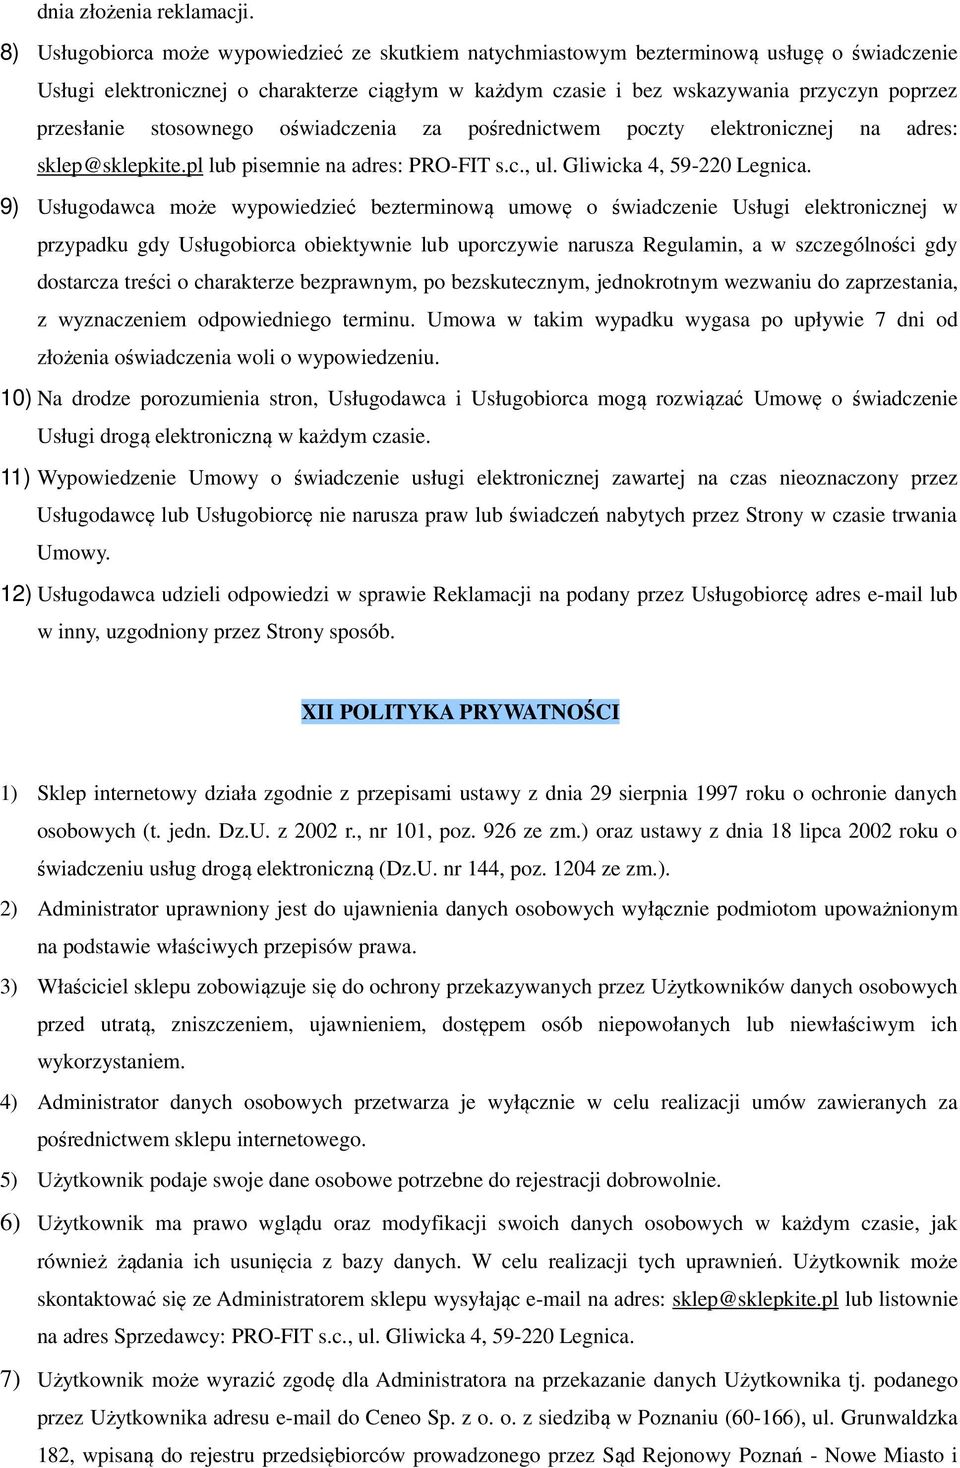 przesłanie stosownego oświadczenia za pośrednictwem poczty elektronicznej na adres: sklep@sklepkite.pl lub pisemnie na adres: PRO-FIT s.c., ul. Gliwicka 4, 59-220 Legnica.